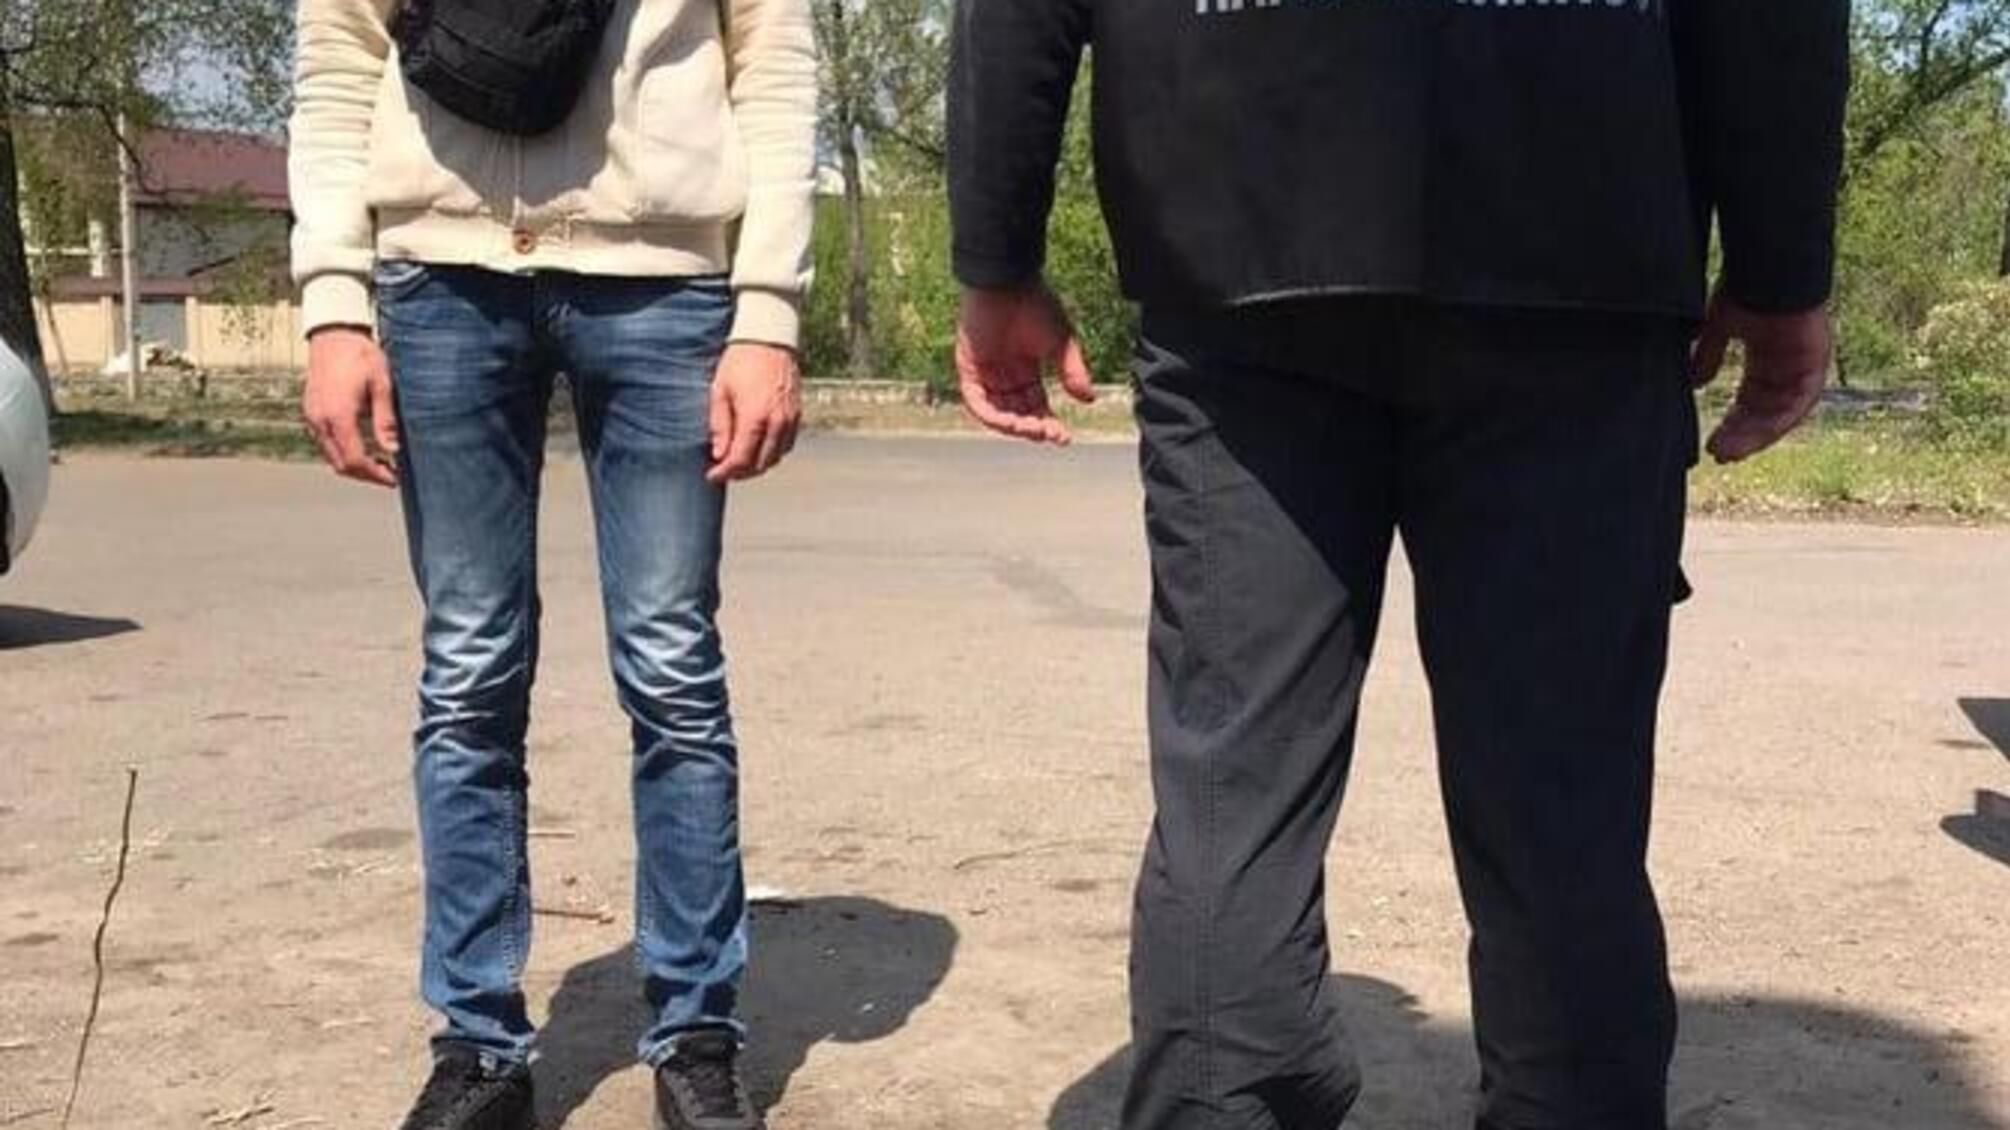 На Луганщині поліція викрила збувача психотропів